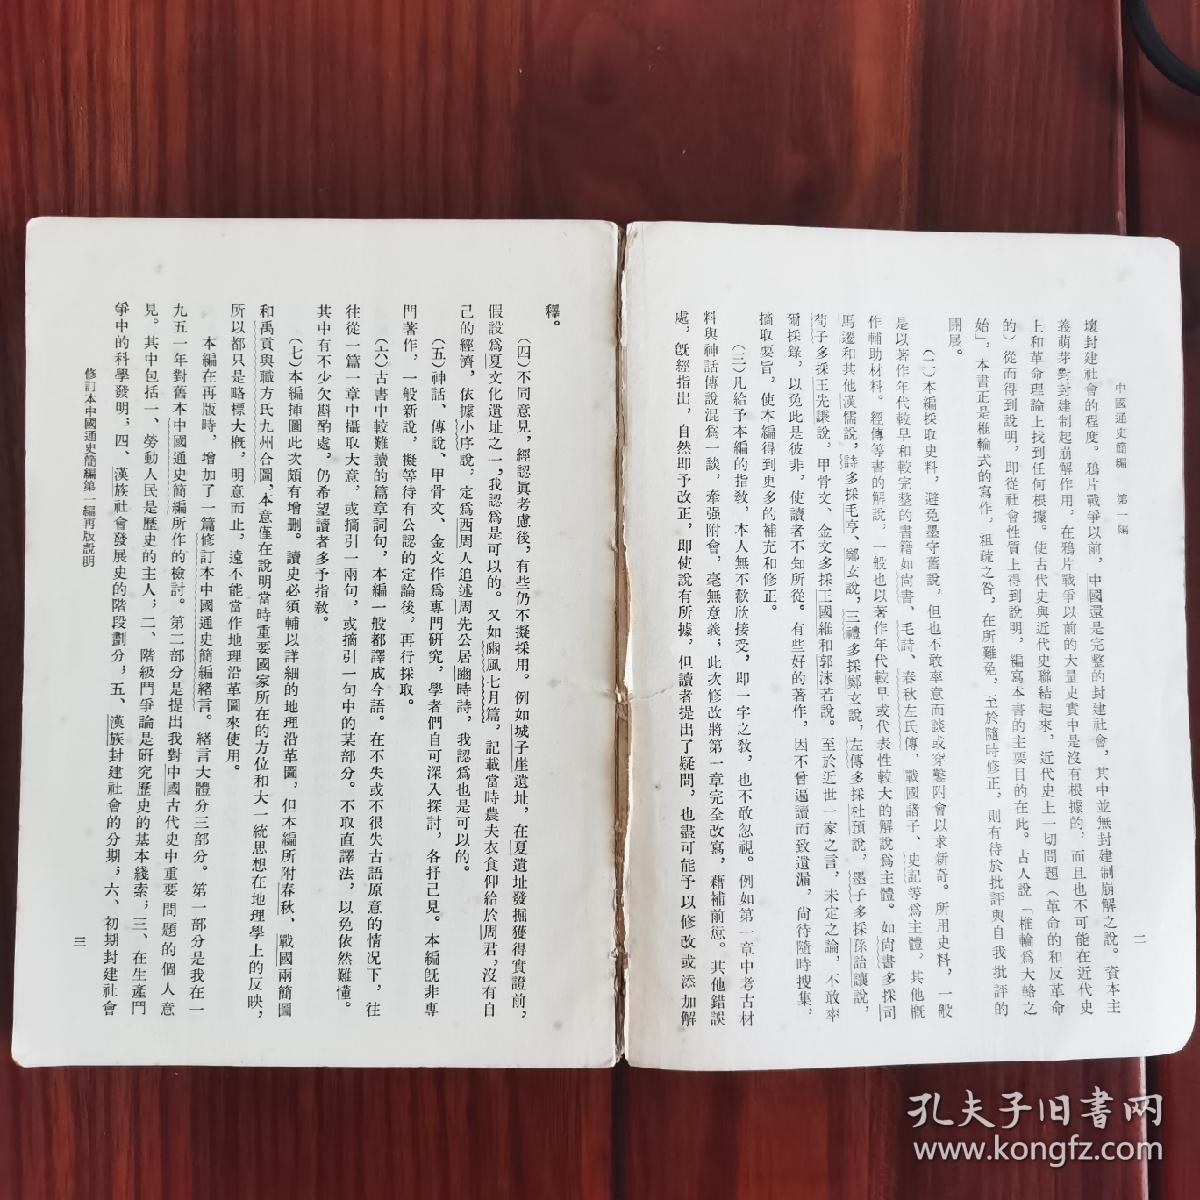 中国通史简编 修订本 第一编 范文澜著作 1965年12月第一次印刷